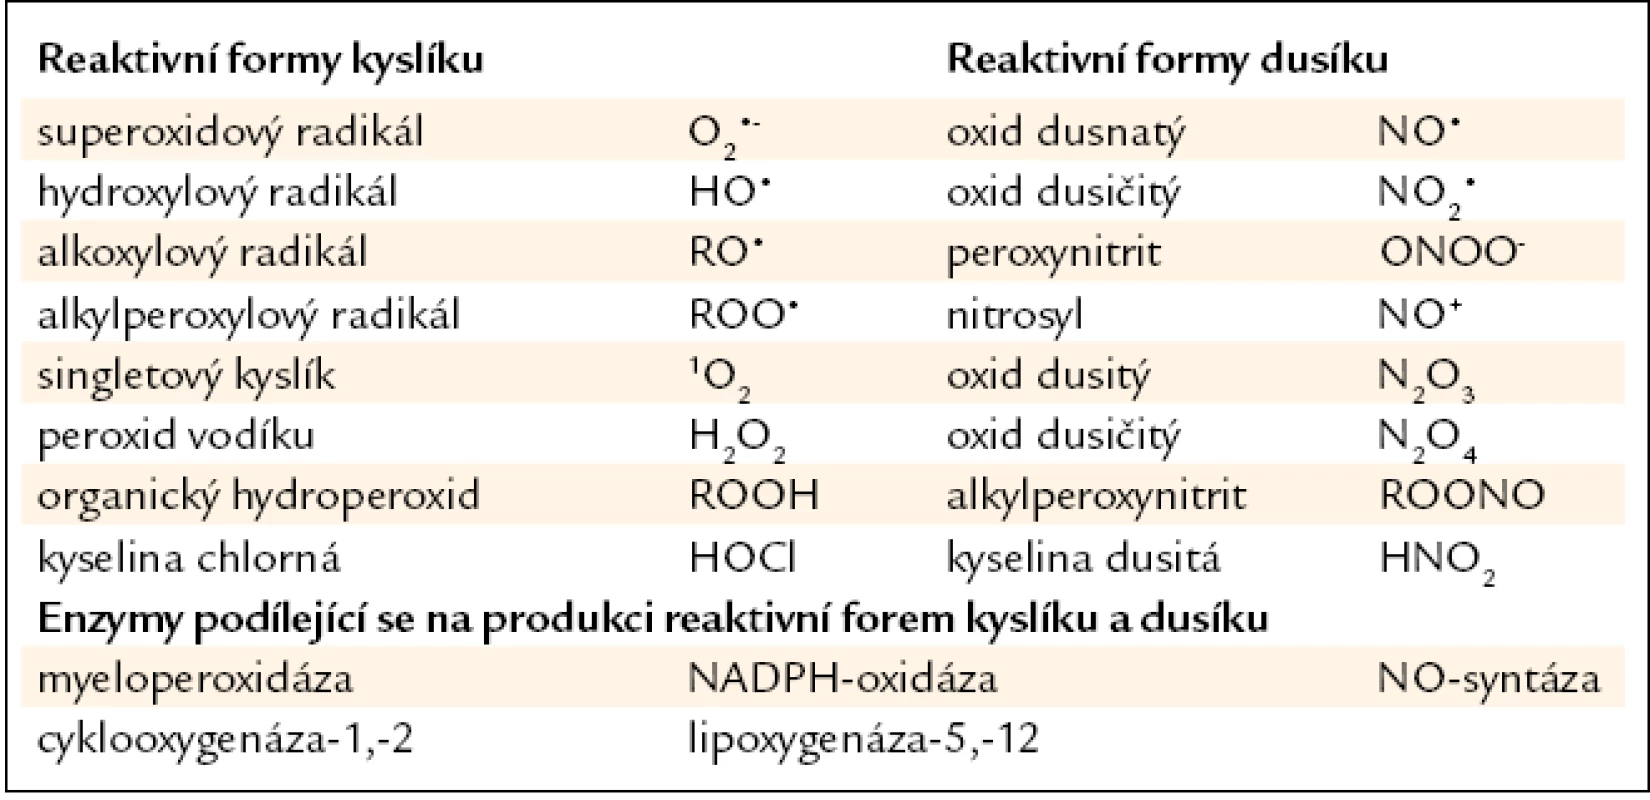 Přehled reaktivních forem kyslíku a dusíku, jejich hlavní enzymatické zdroje. Upraveno podle [7,9].